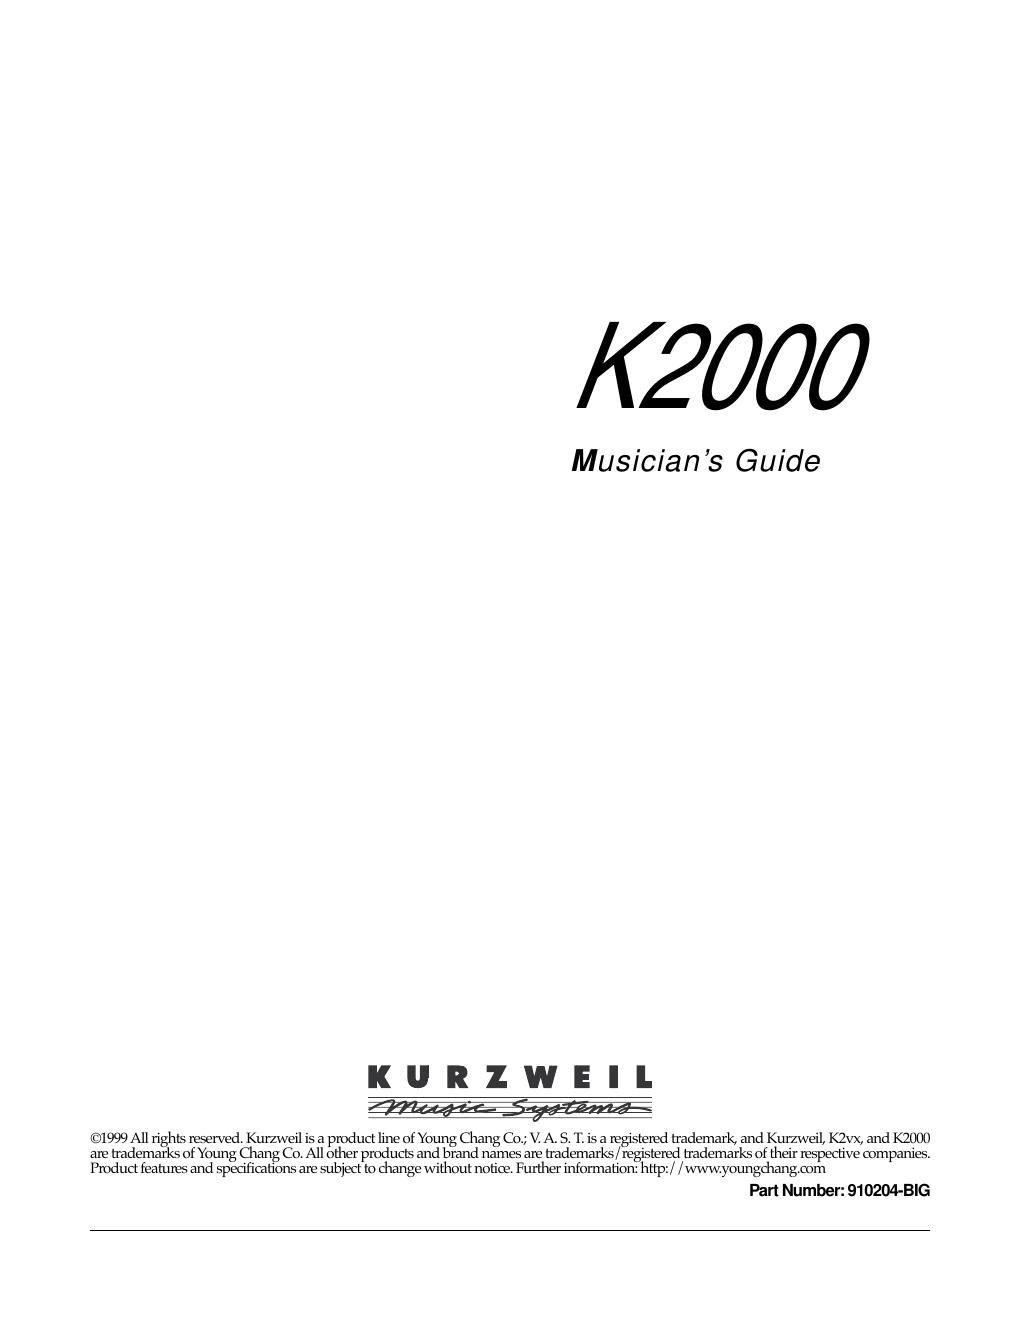 kurzweil k2000 musicians guide